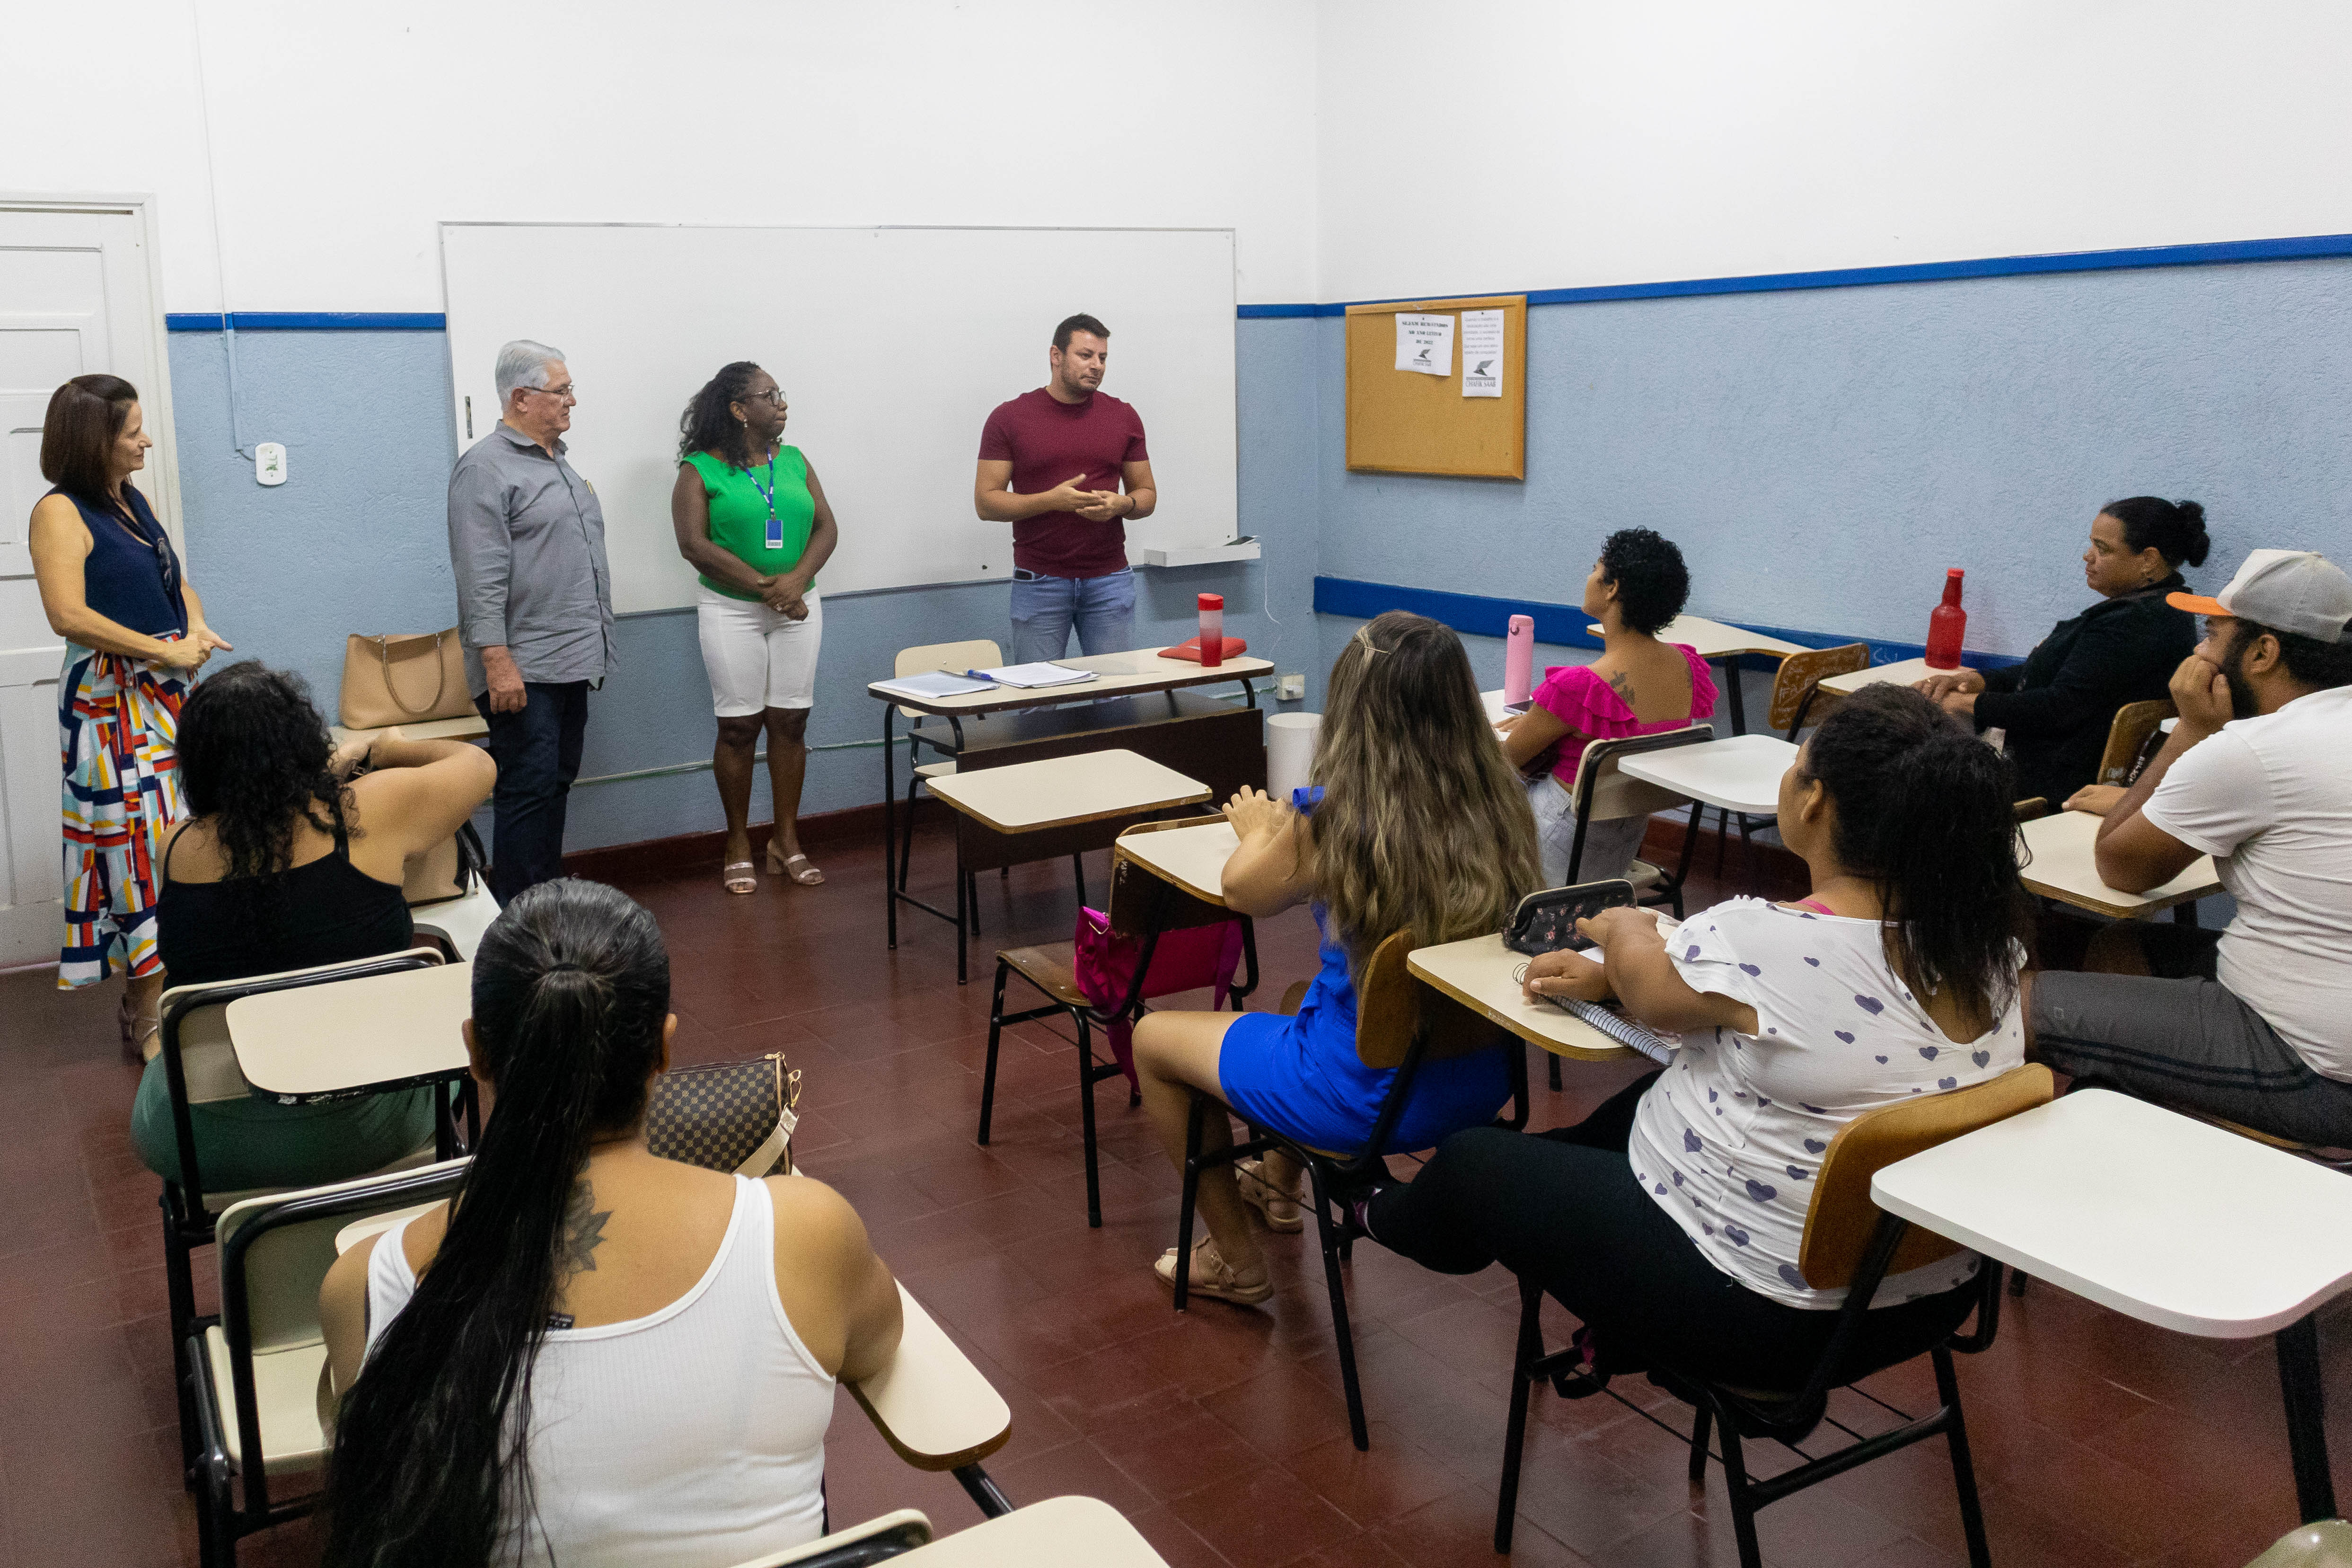 Gestores do município dão boas-vindas aos novos alunos. Foto: Luís Fernando da Silva / Prefeitura de Urupês.